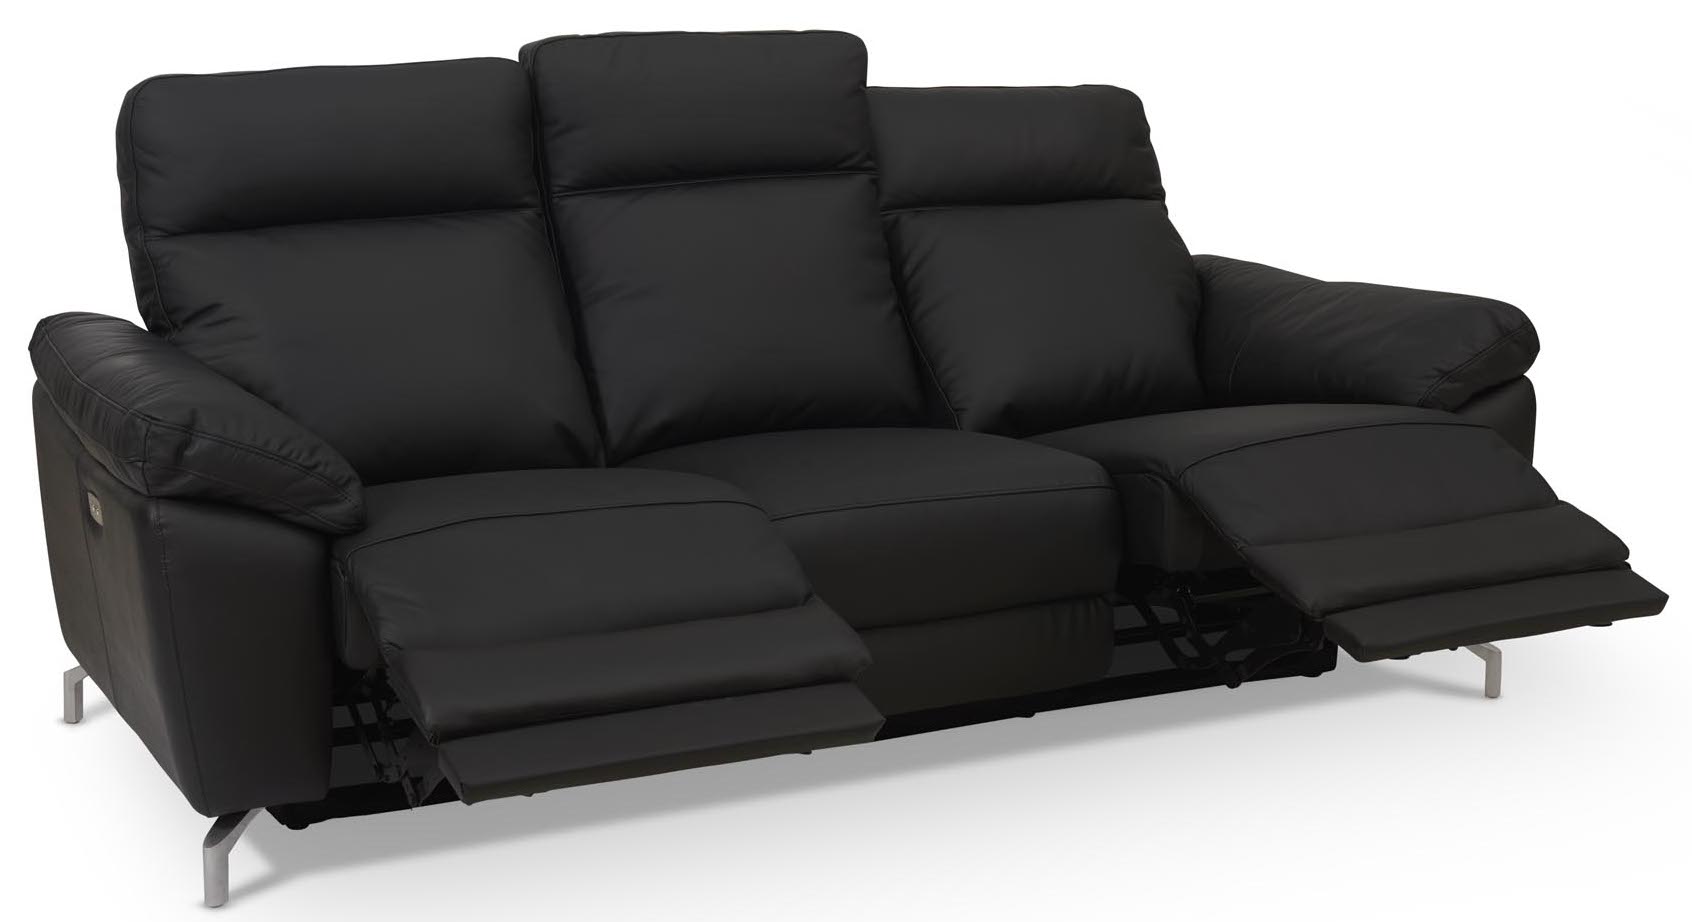 Selma 3 personers sofa med elevations sæder til nakke, ryg og ben i sort læder